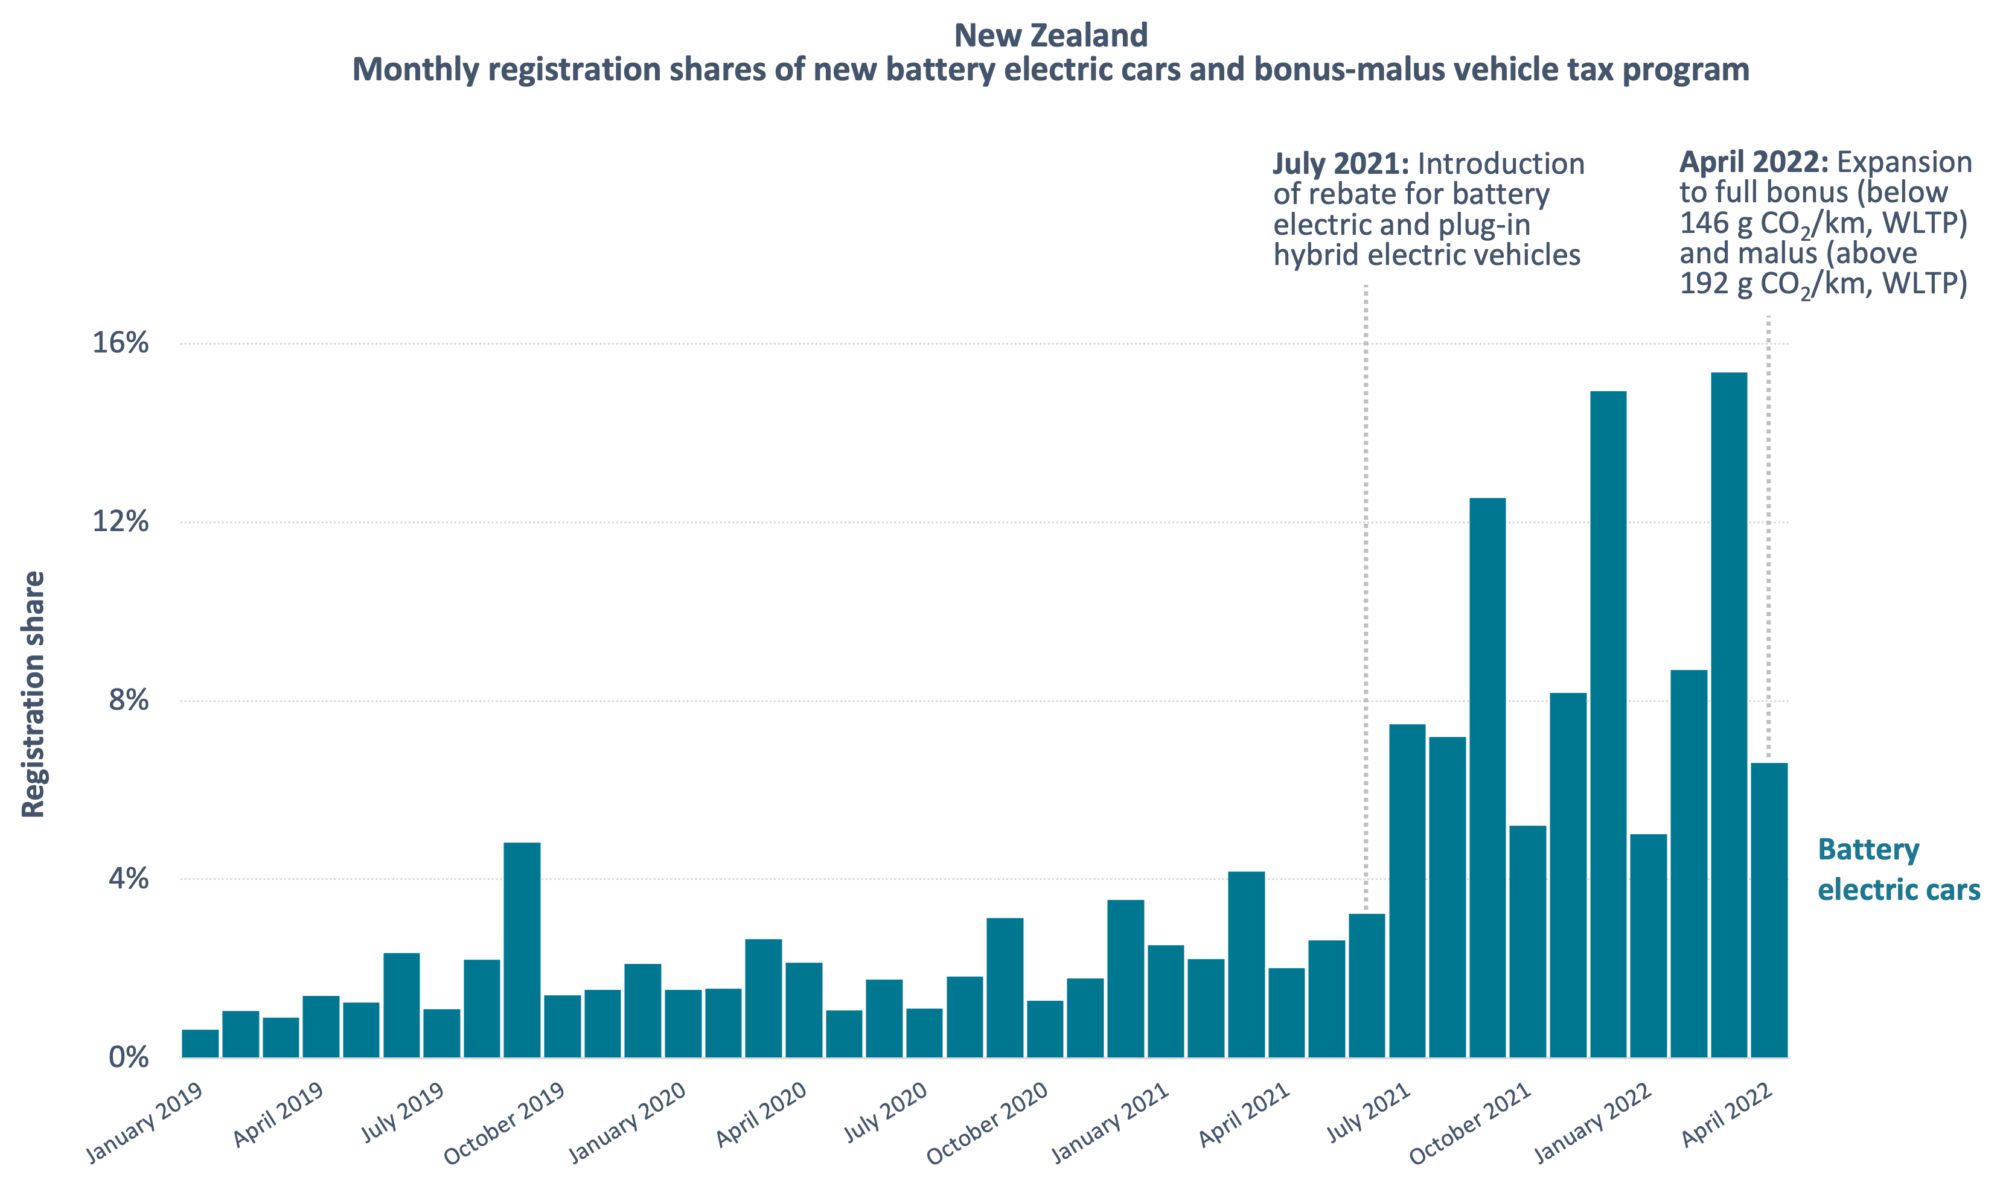 Kaavio, joka näyttää kuukausittaiset BEV -rekisteröintiohjeet Uudessa -Seelannissa